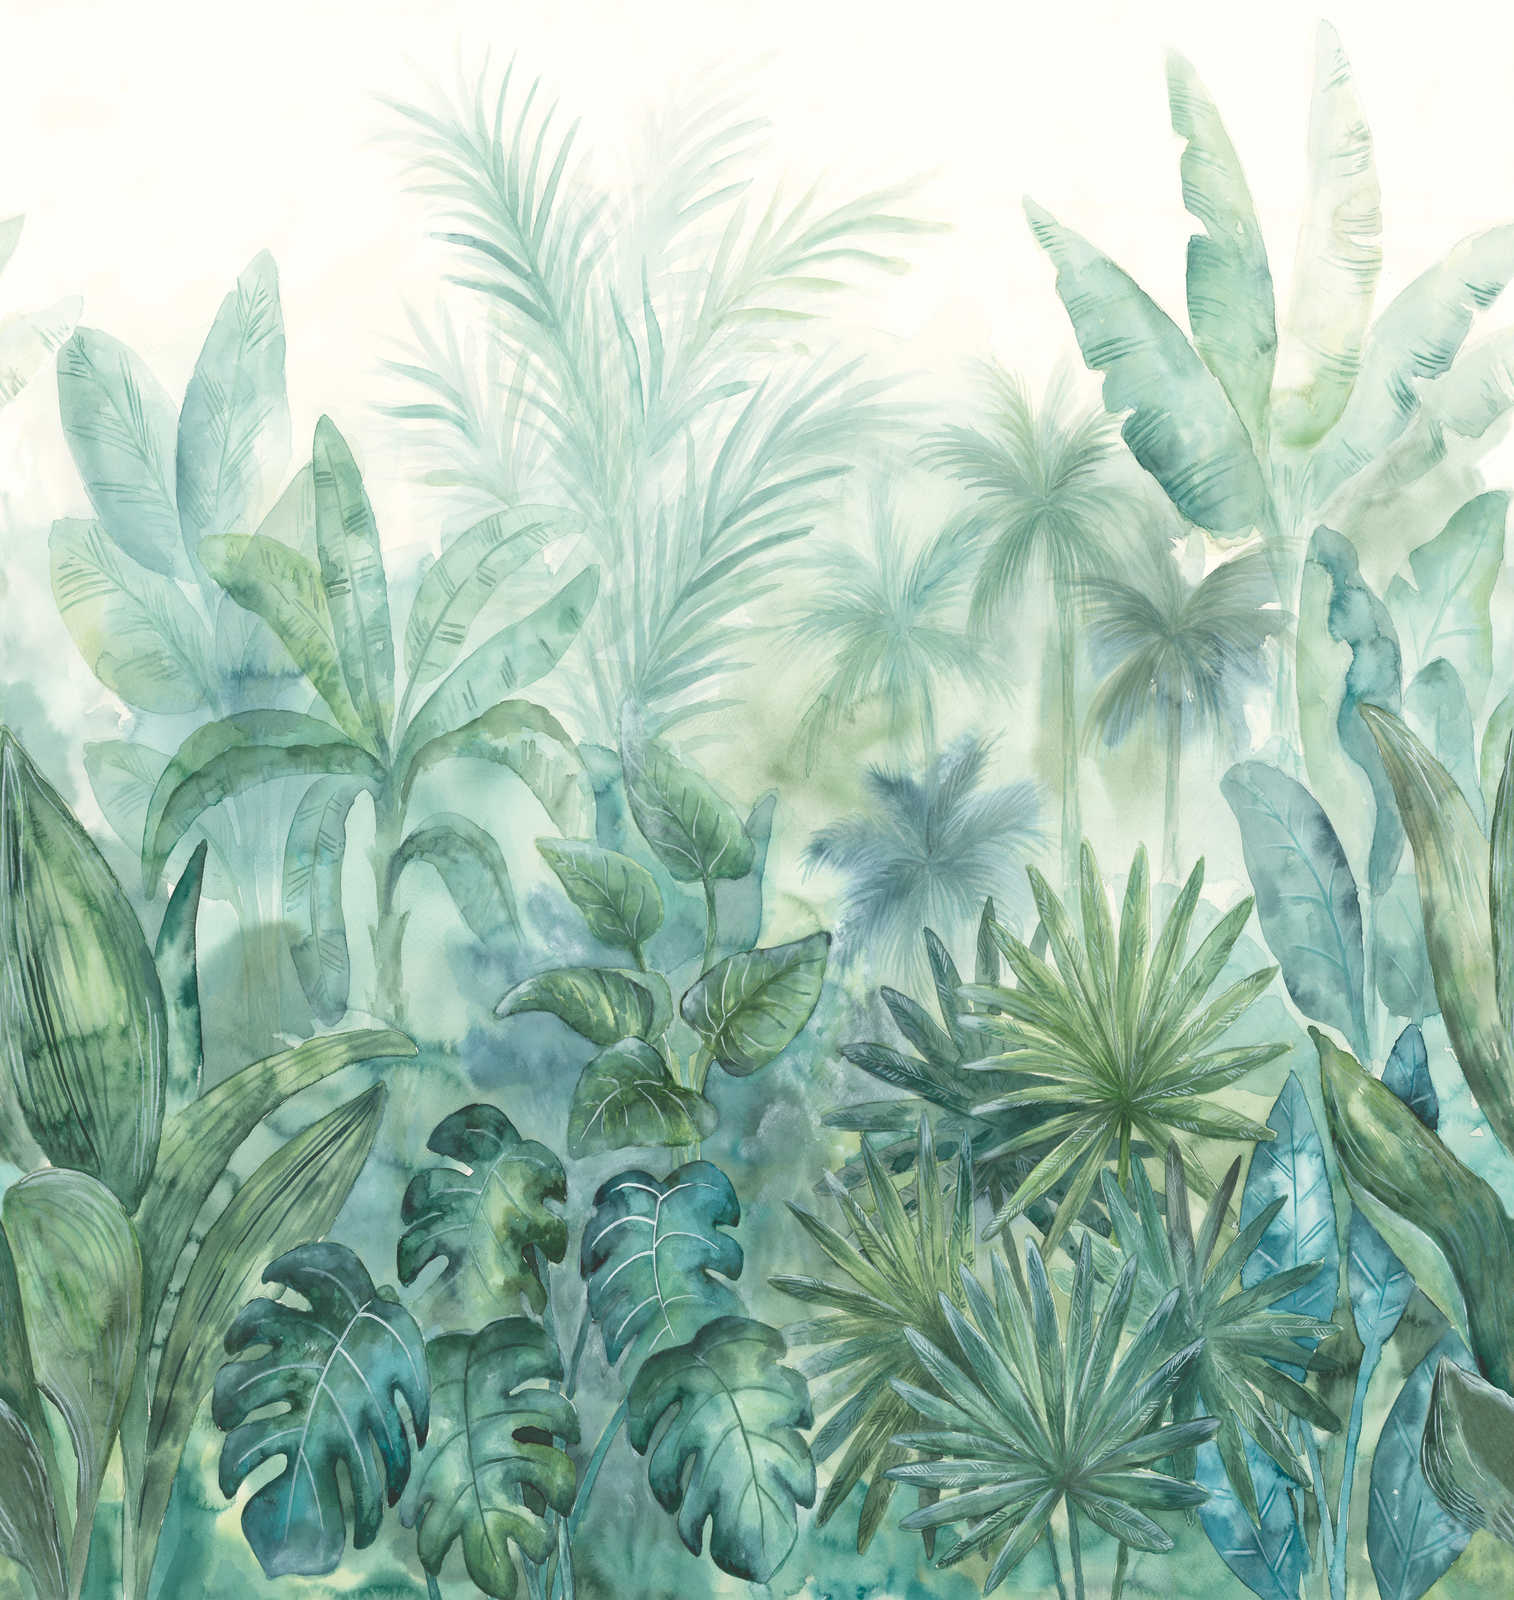             Papier peint avec motif jungle en aquarelle - vert, bleu, crème
        